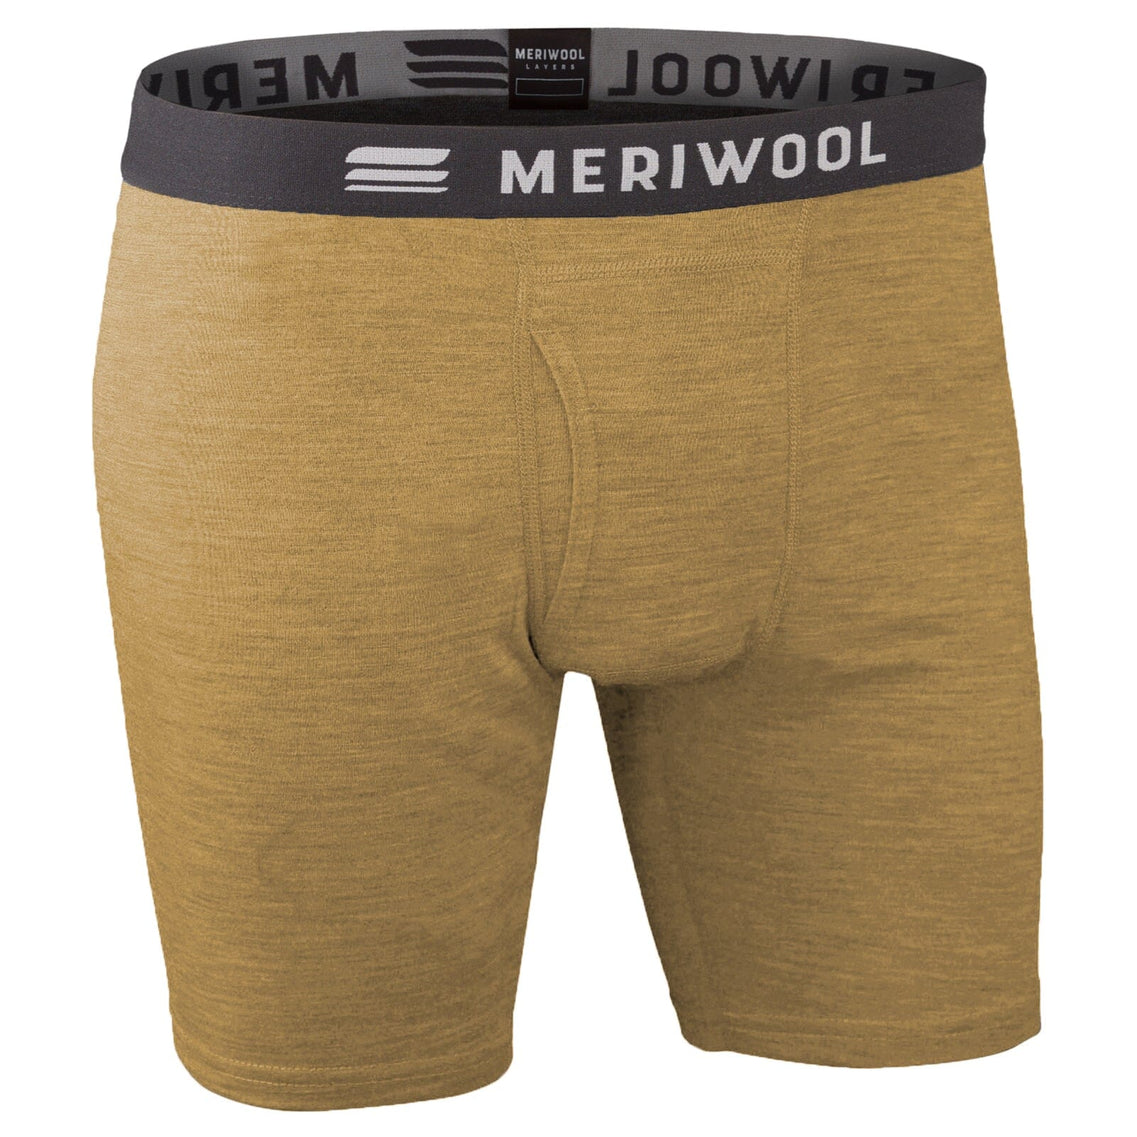 MERIWOOL Mens Boxer Briefs Merino Wool Underwear Base Layer for